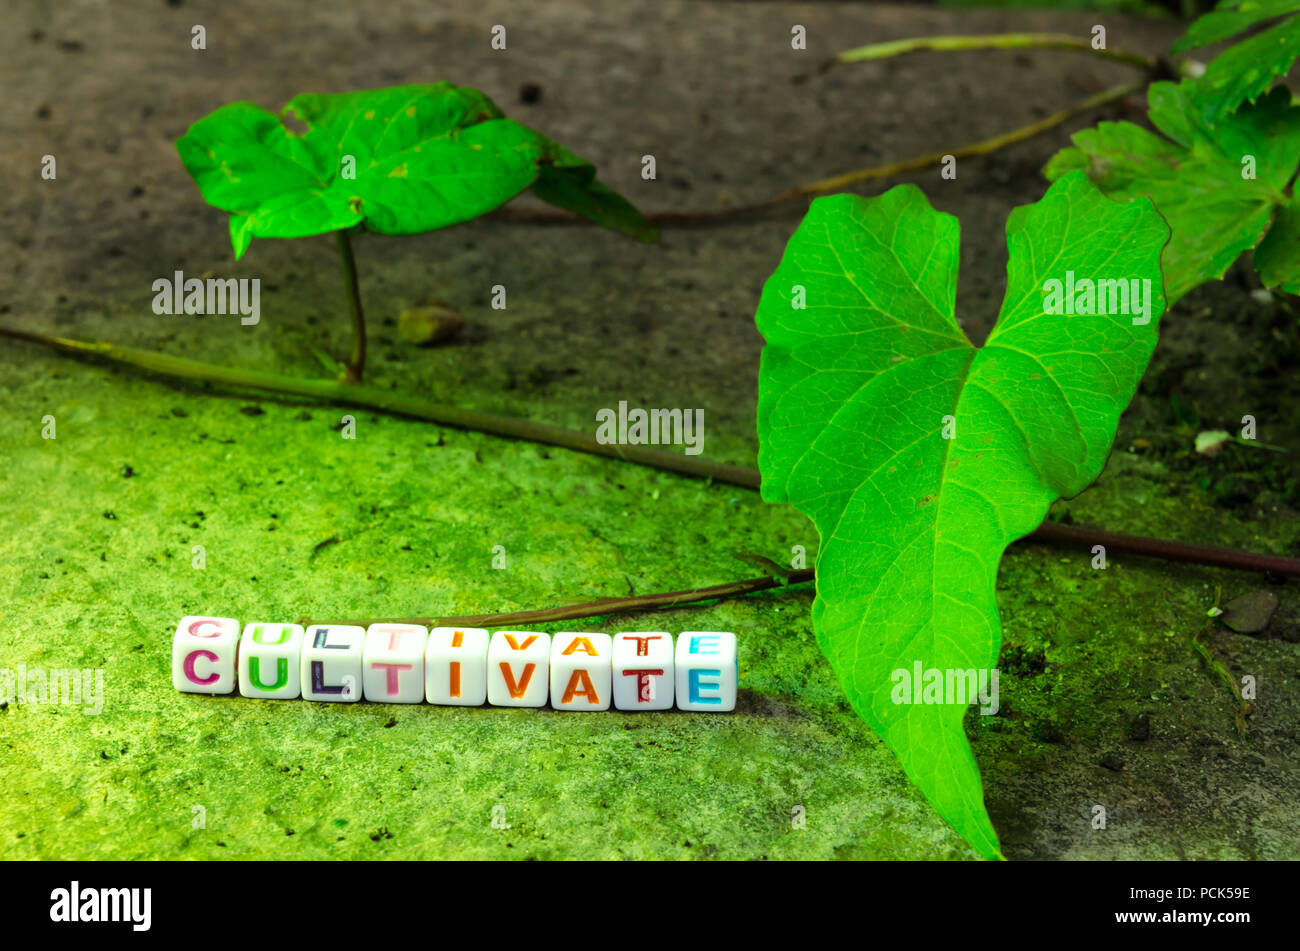 Perline in ordine alfabetico sospeso su un filo ortografia "coltivare" adiacente ad un verde della vigna e impostata su una superficie di pietra Foto Stock